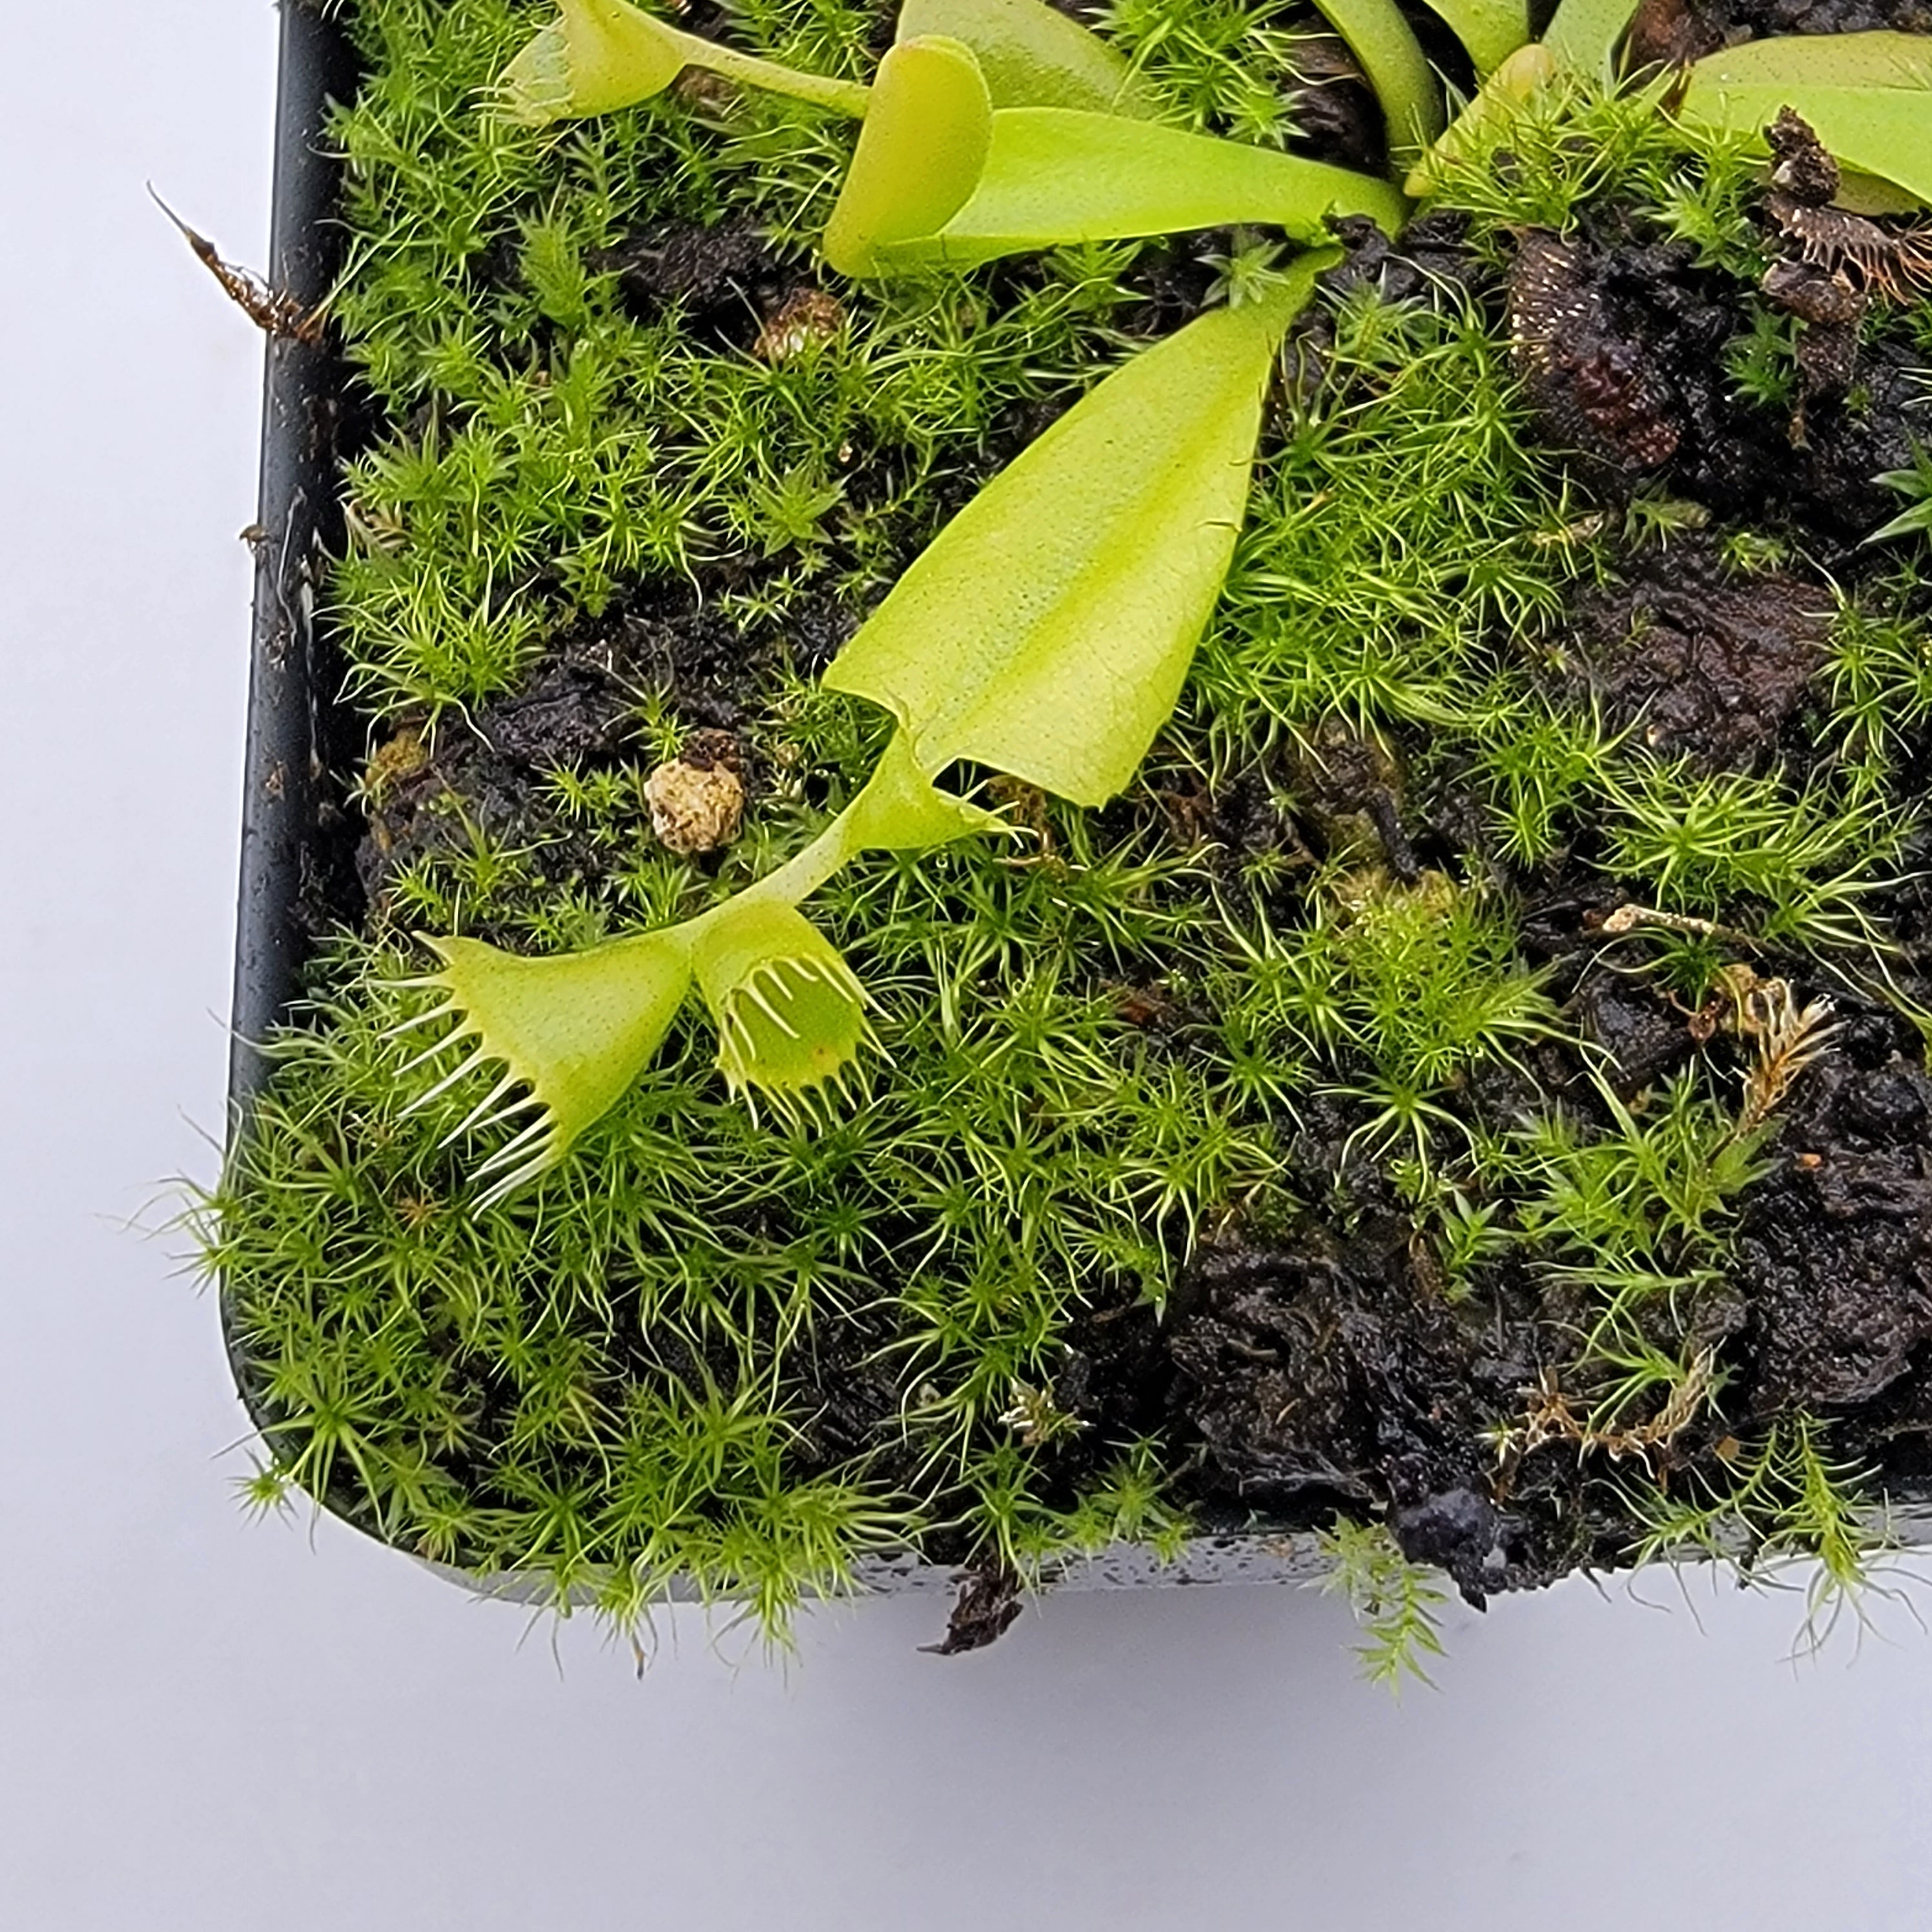 Venus flytrap (Dionaea muscipula) 'Double Trouble' - Rainbow Carnivorous Plants LLC